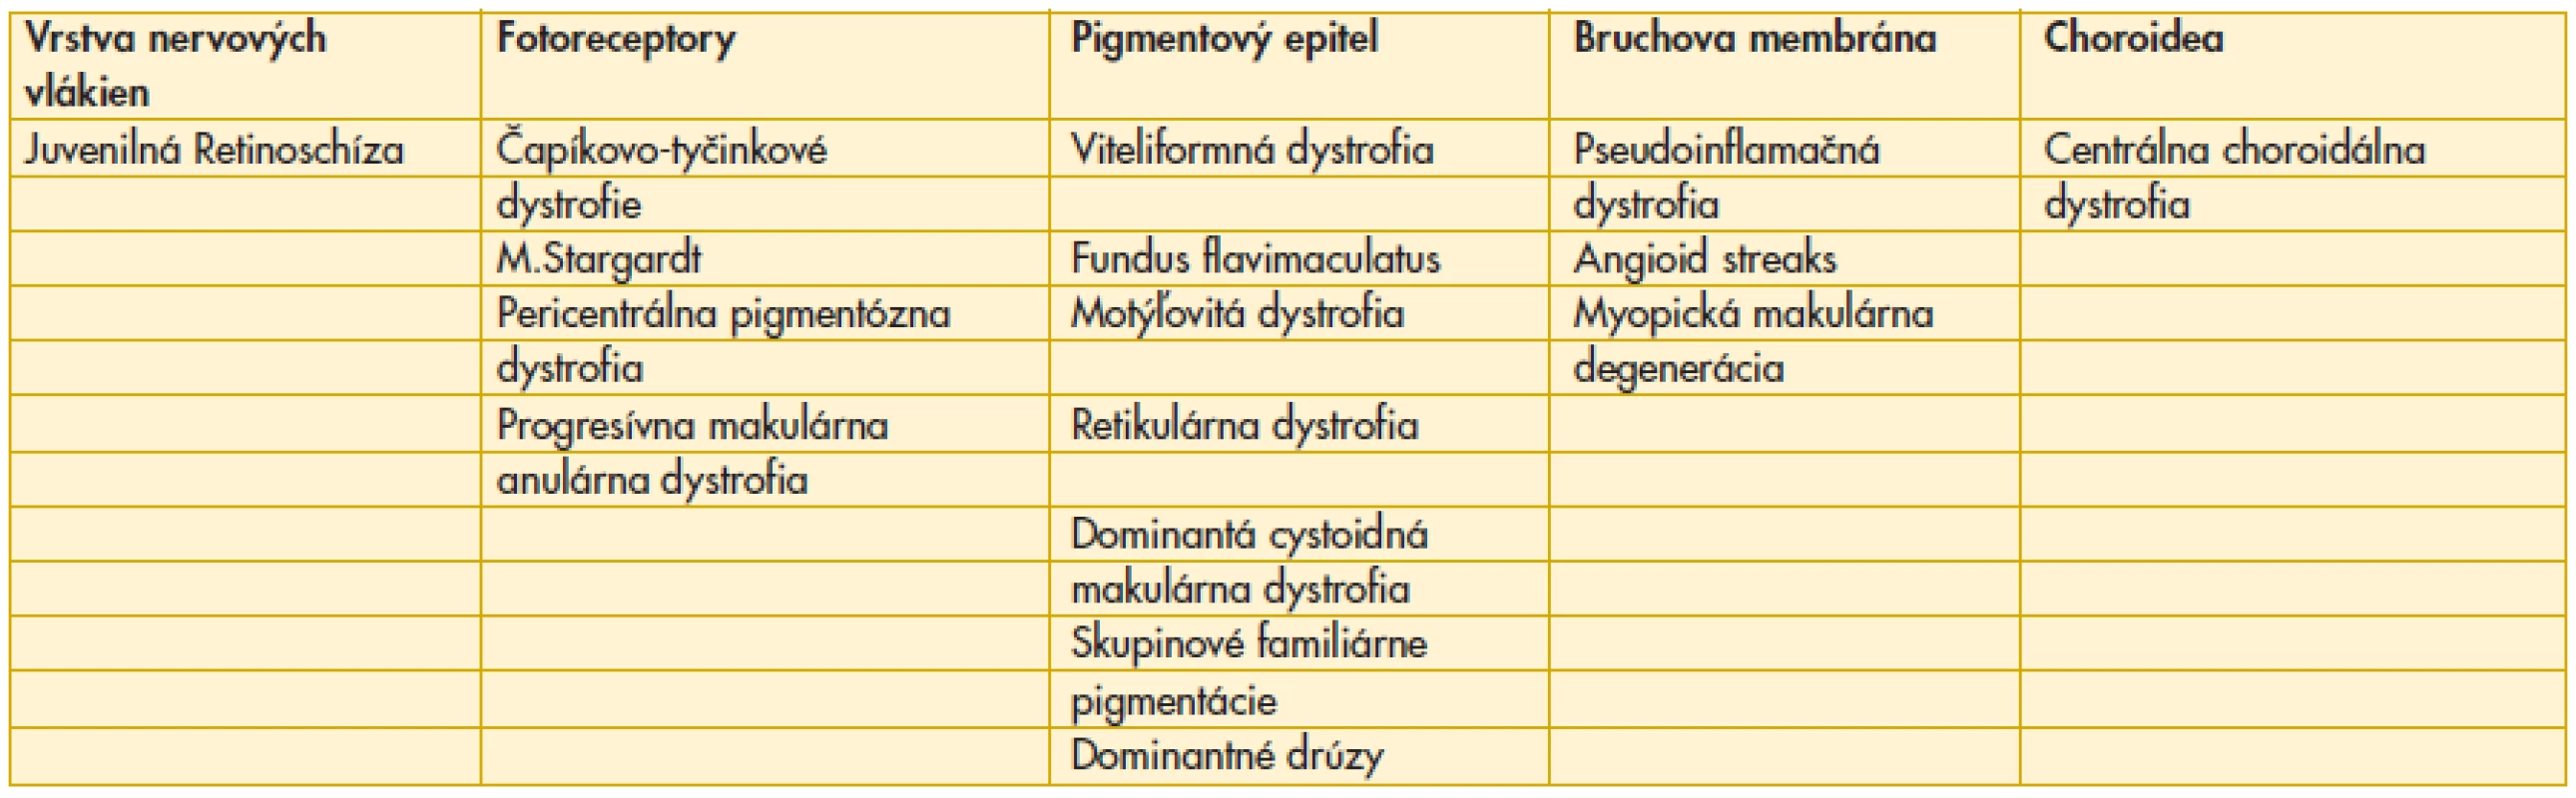 Rozdelenie makulárnych dystrofii podľa miesta anatomického vzniku podľa Deutmana (1).